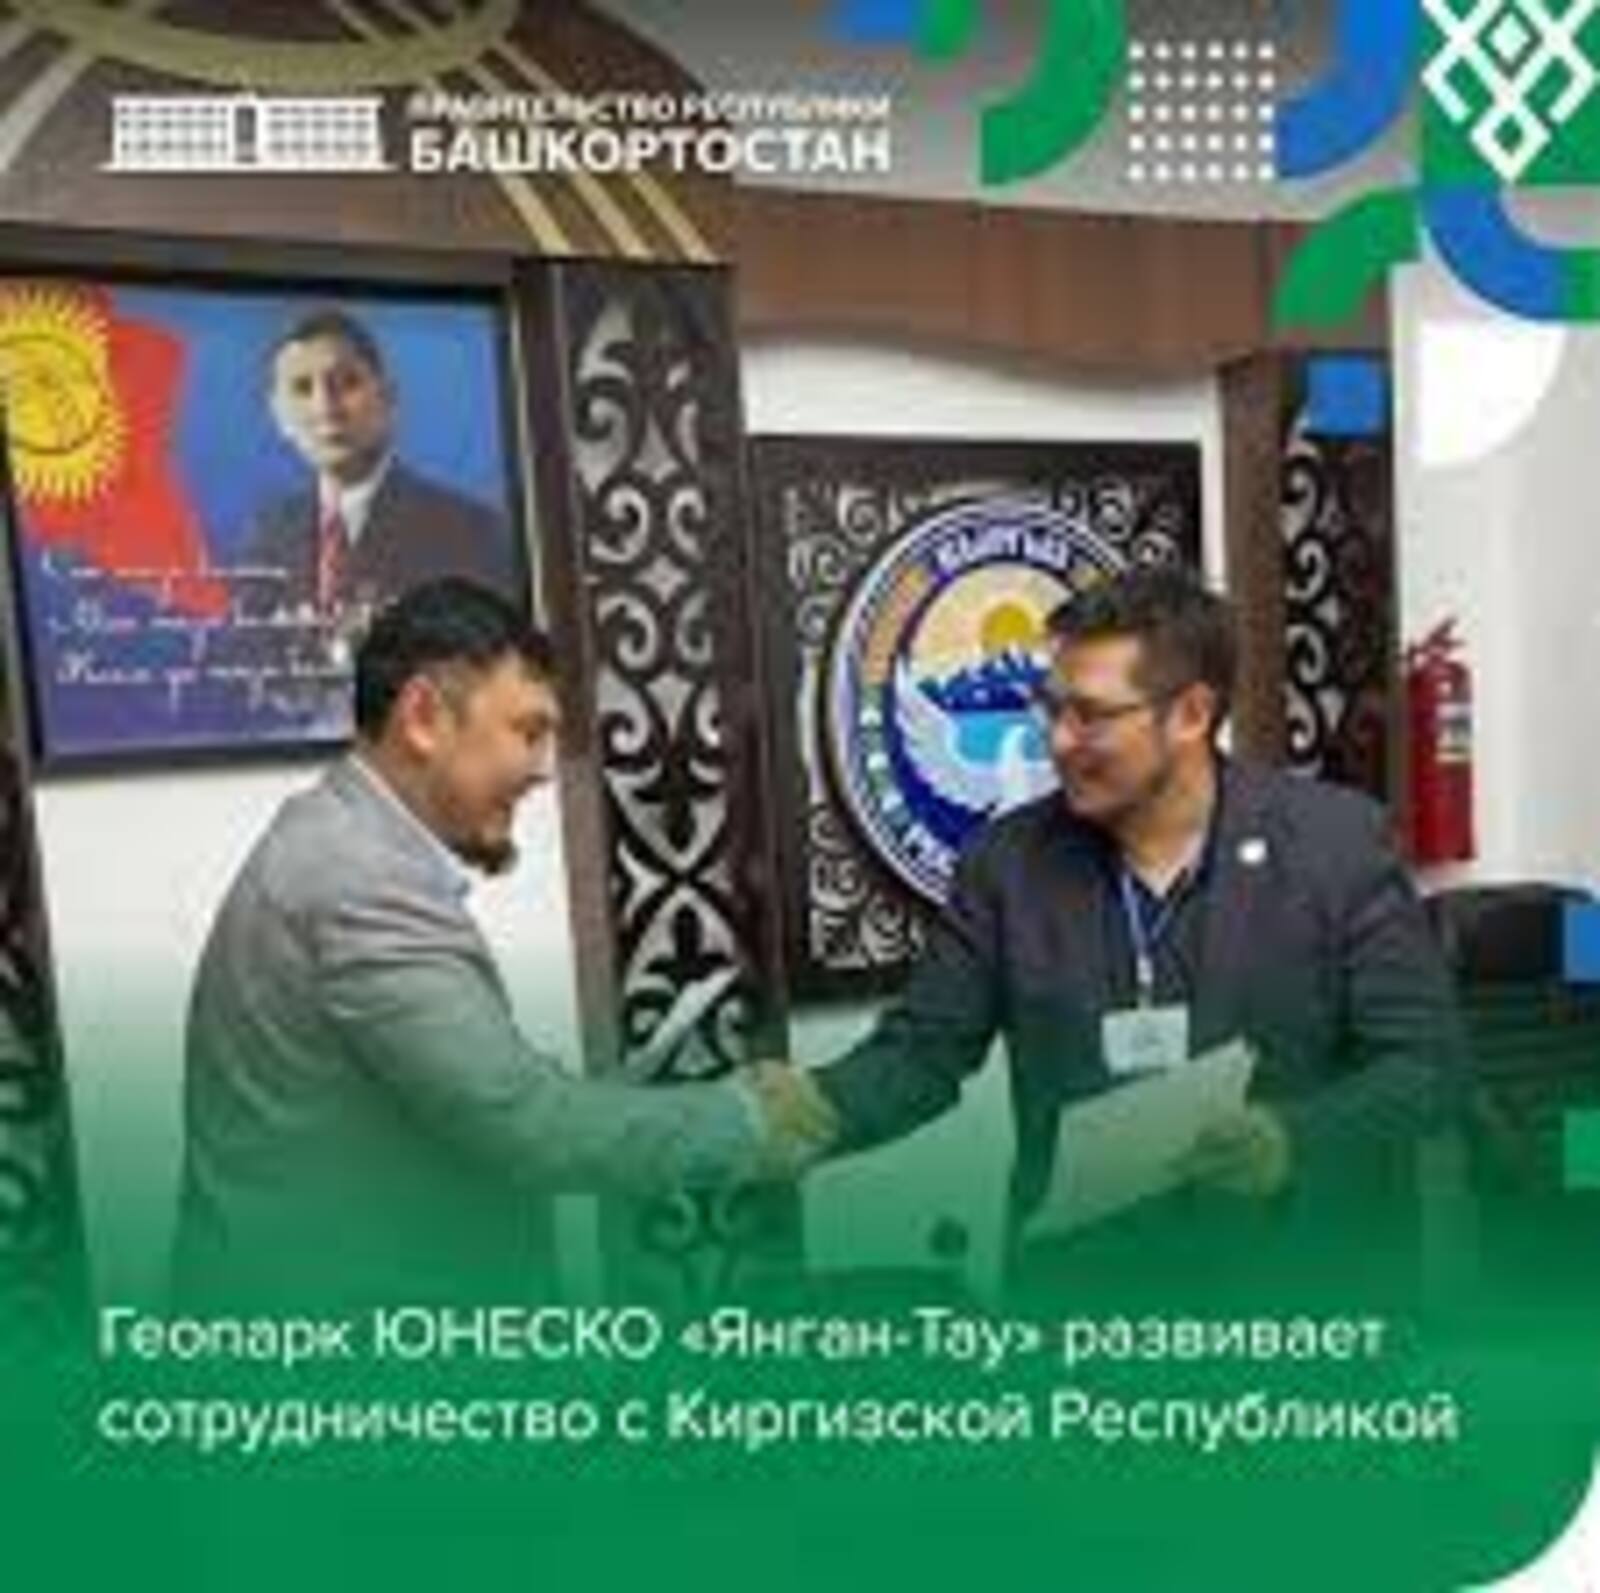 Геопарк «Янган-Тау» развивает сотрудничество с Кыргызстаном